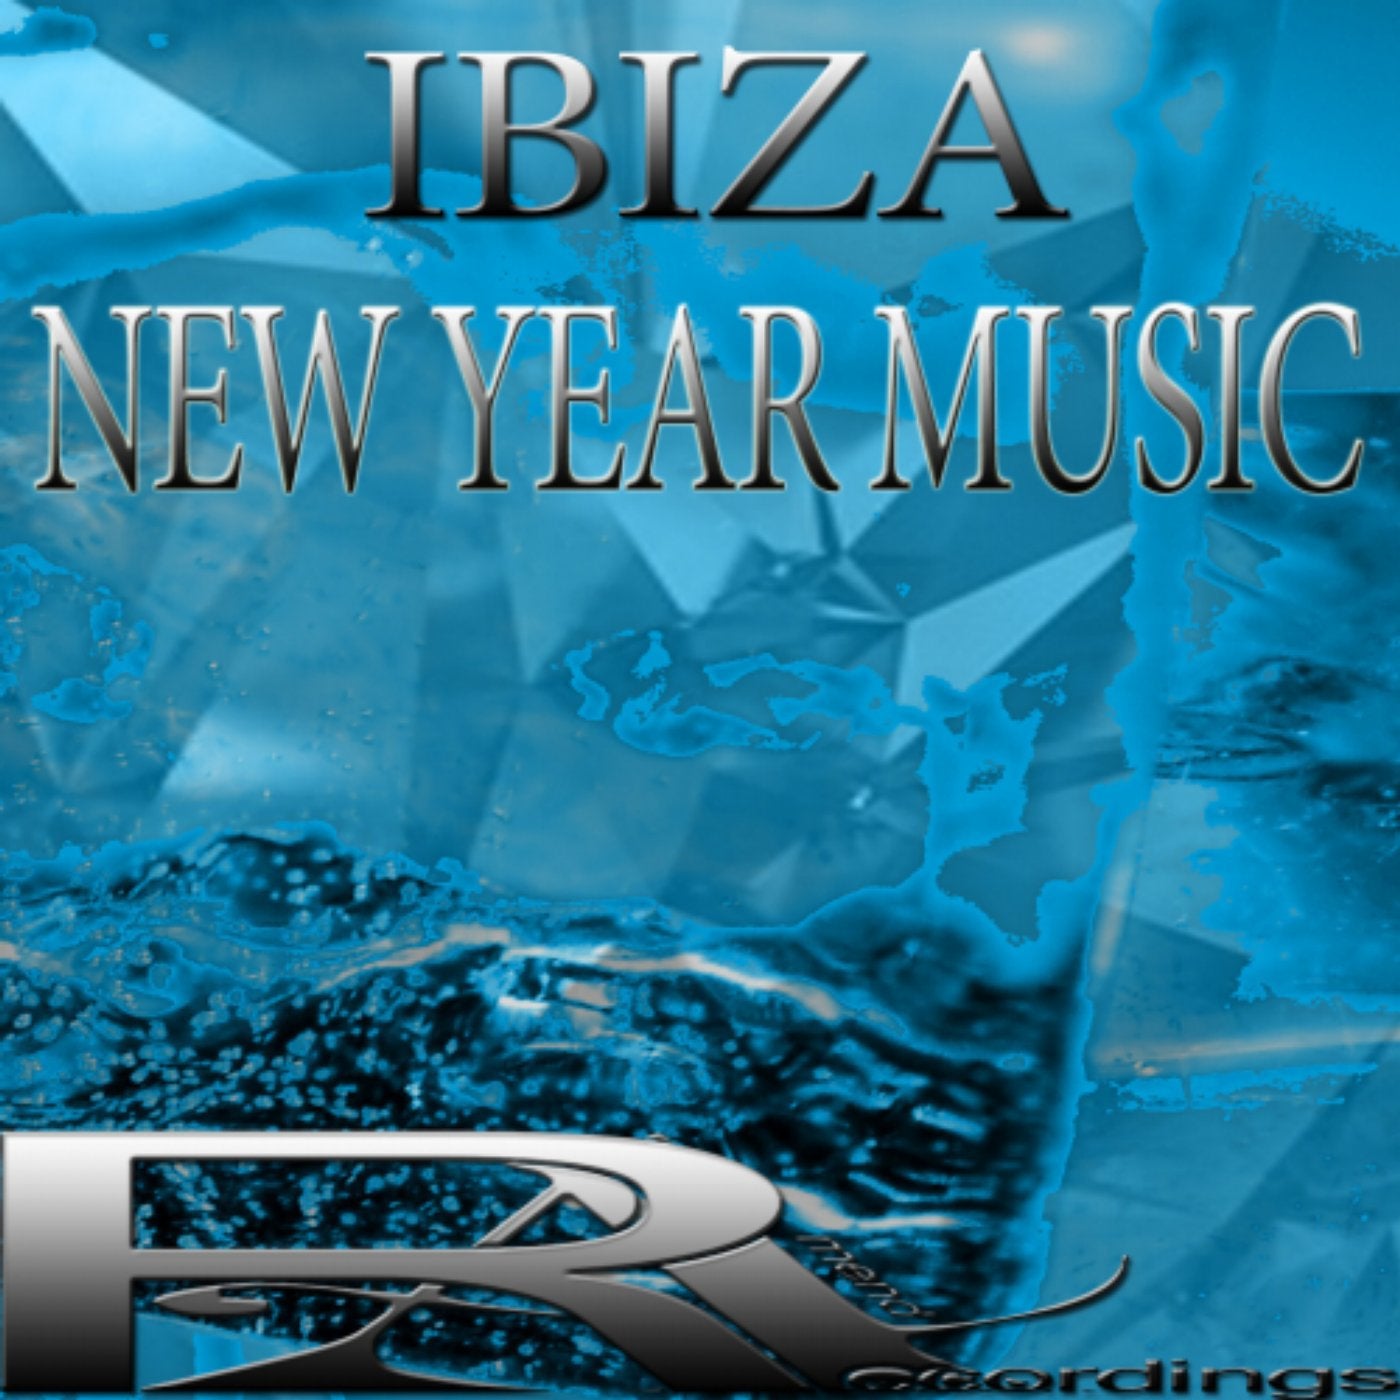 IBIZA NEW YEAR MUSIC